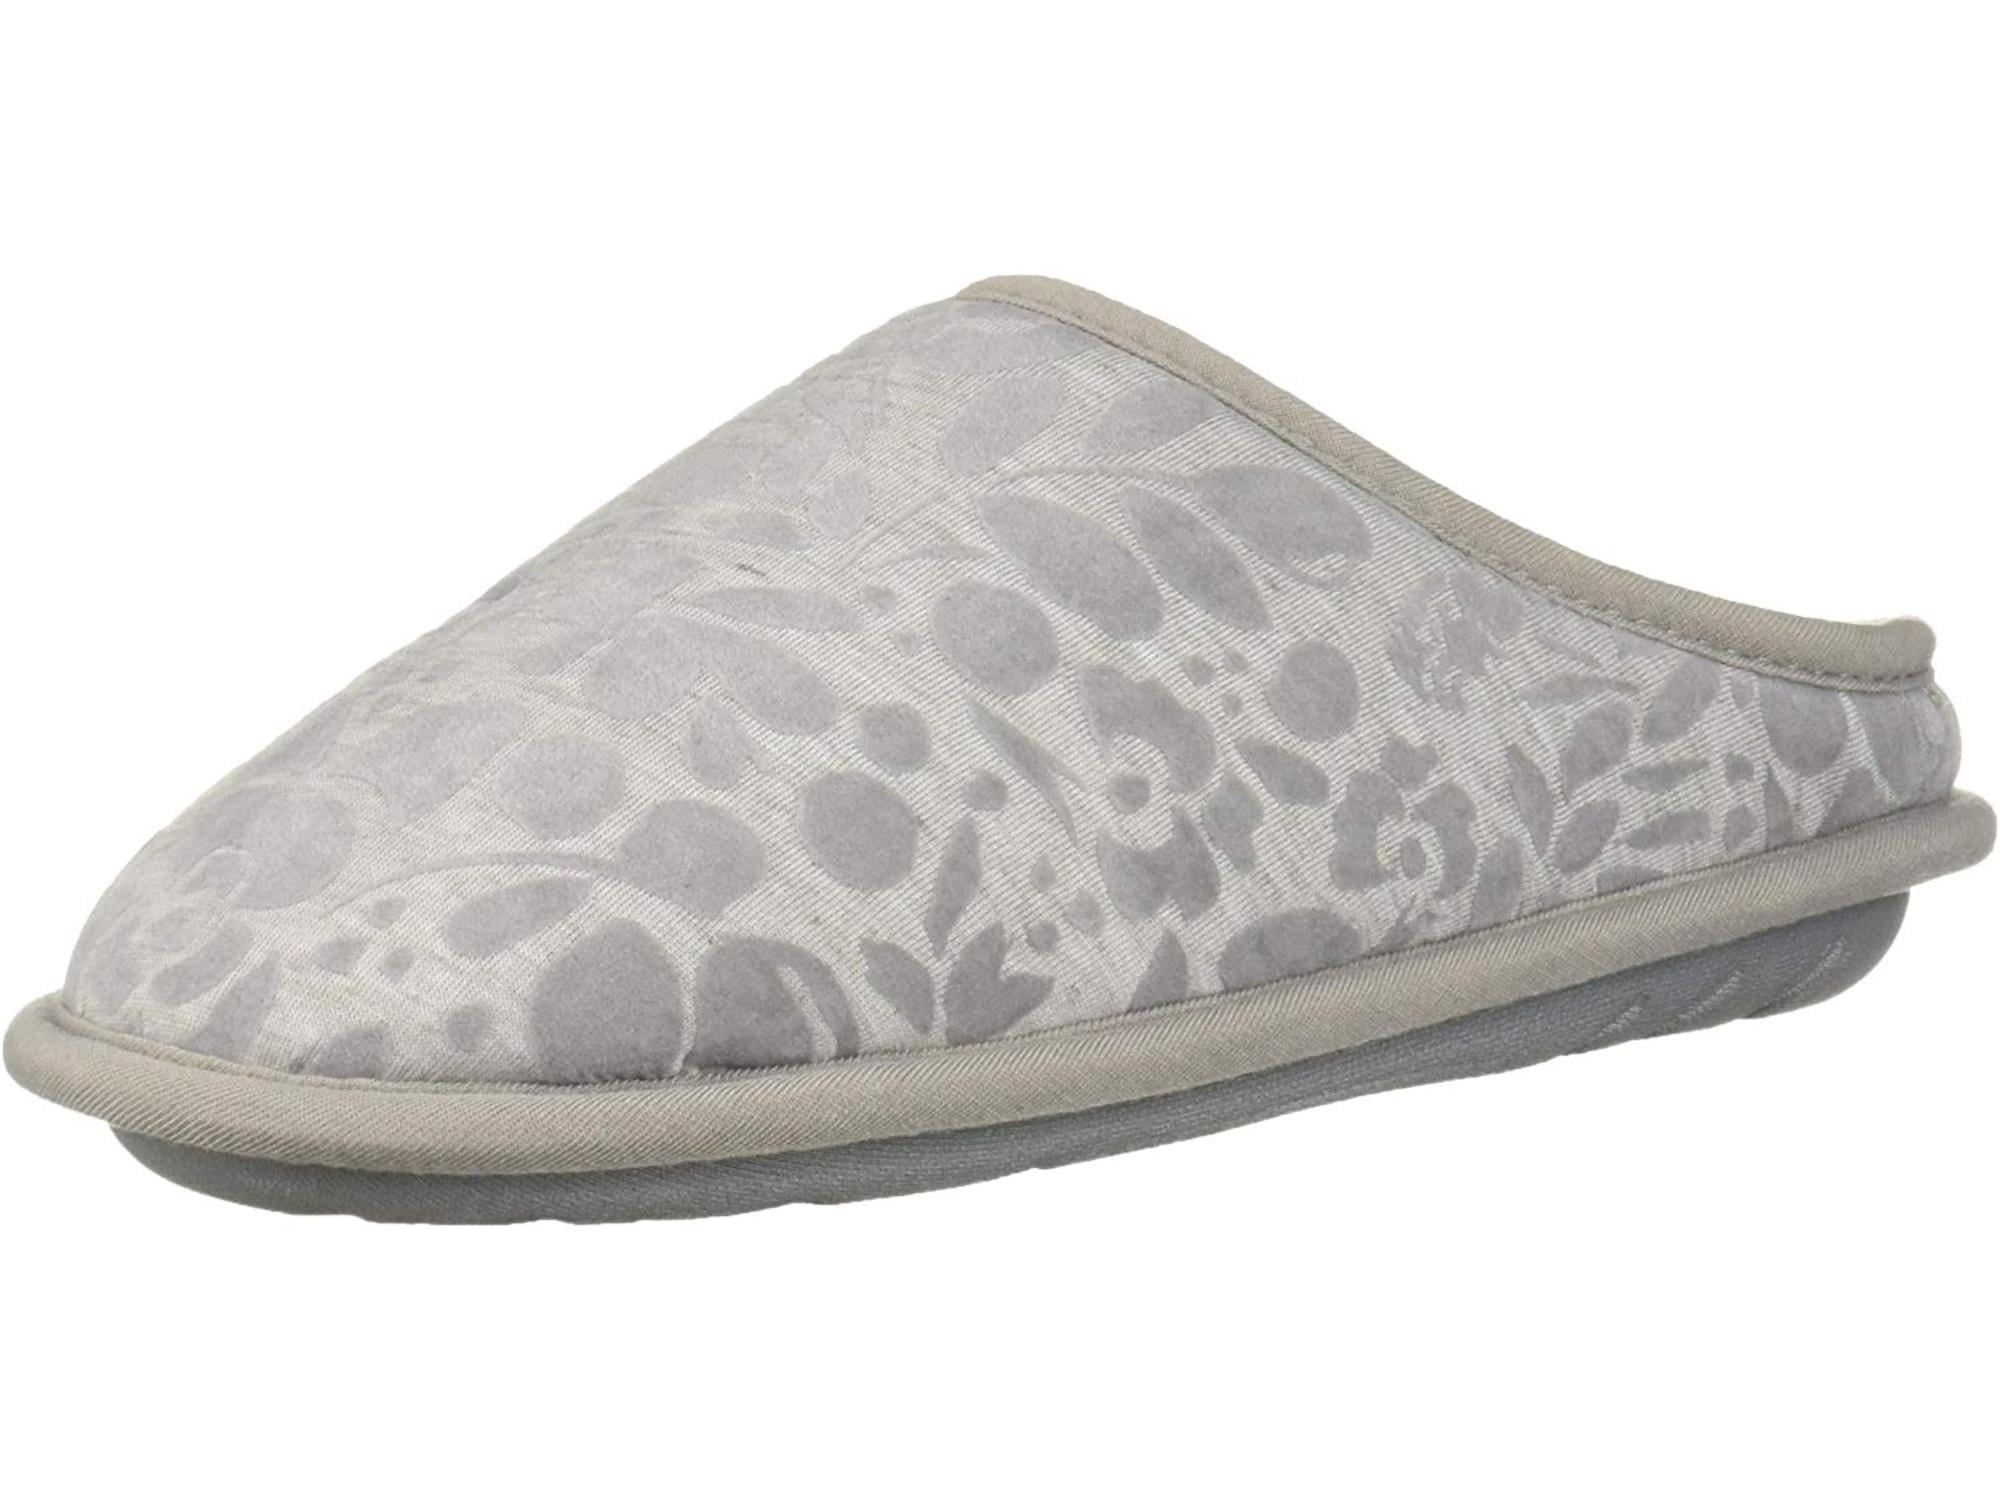 dearfoam slippers canada